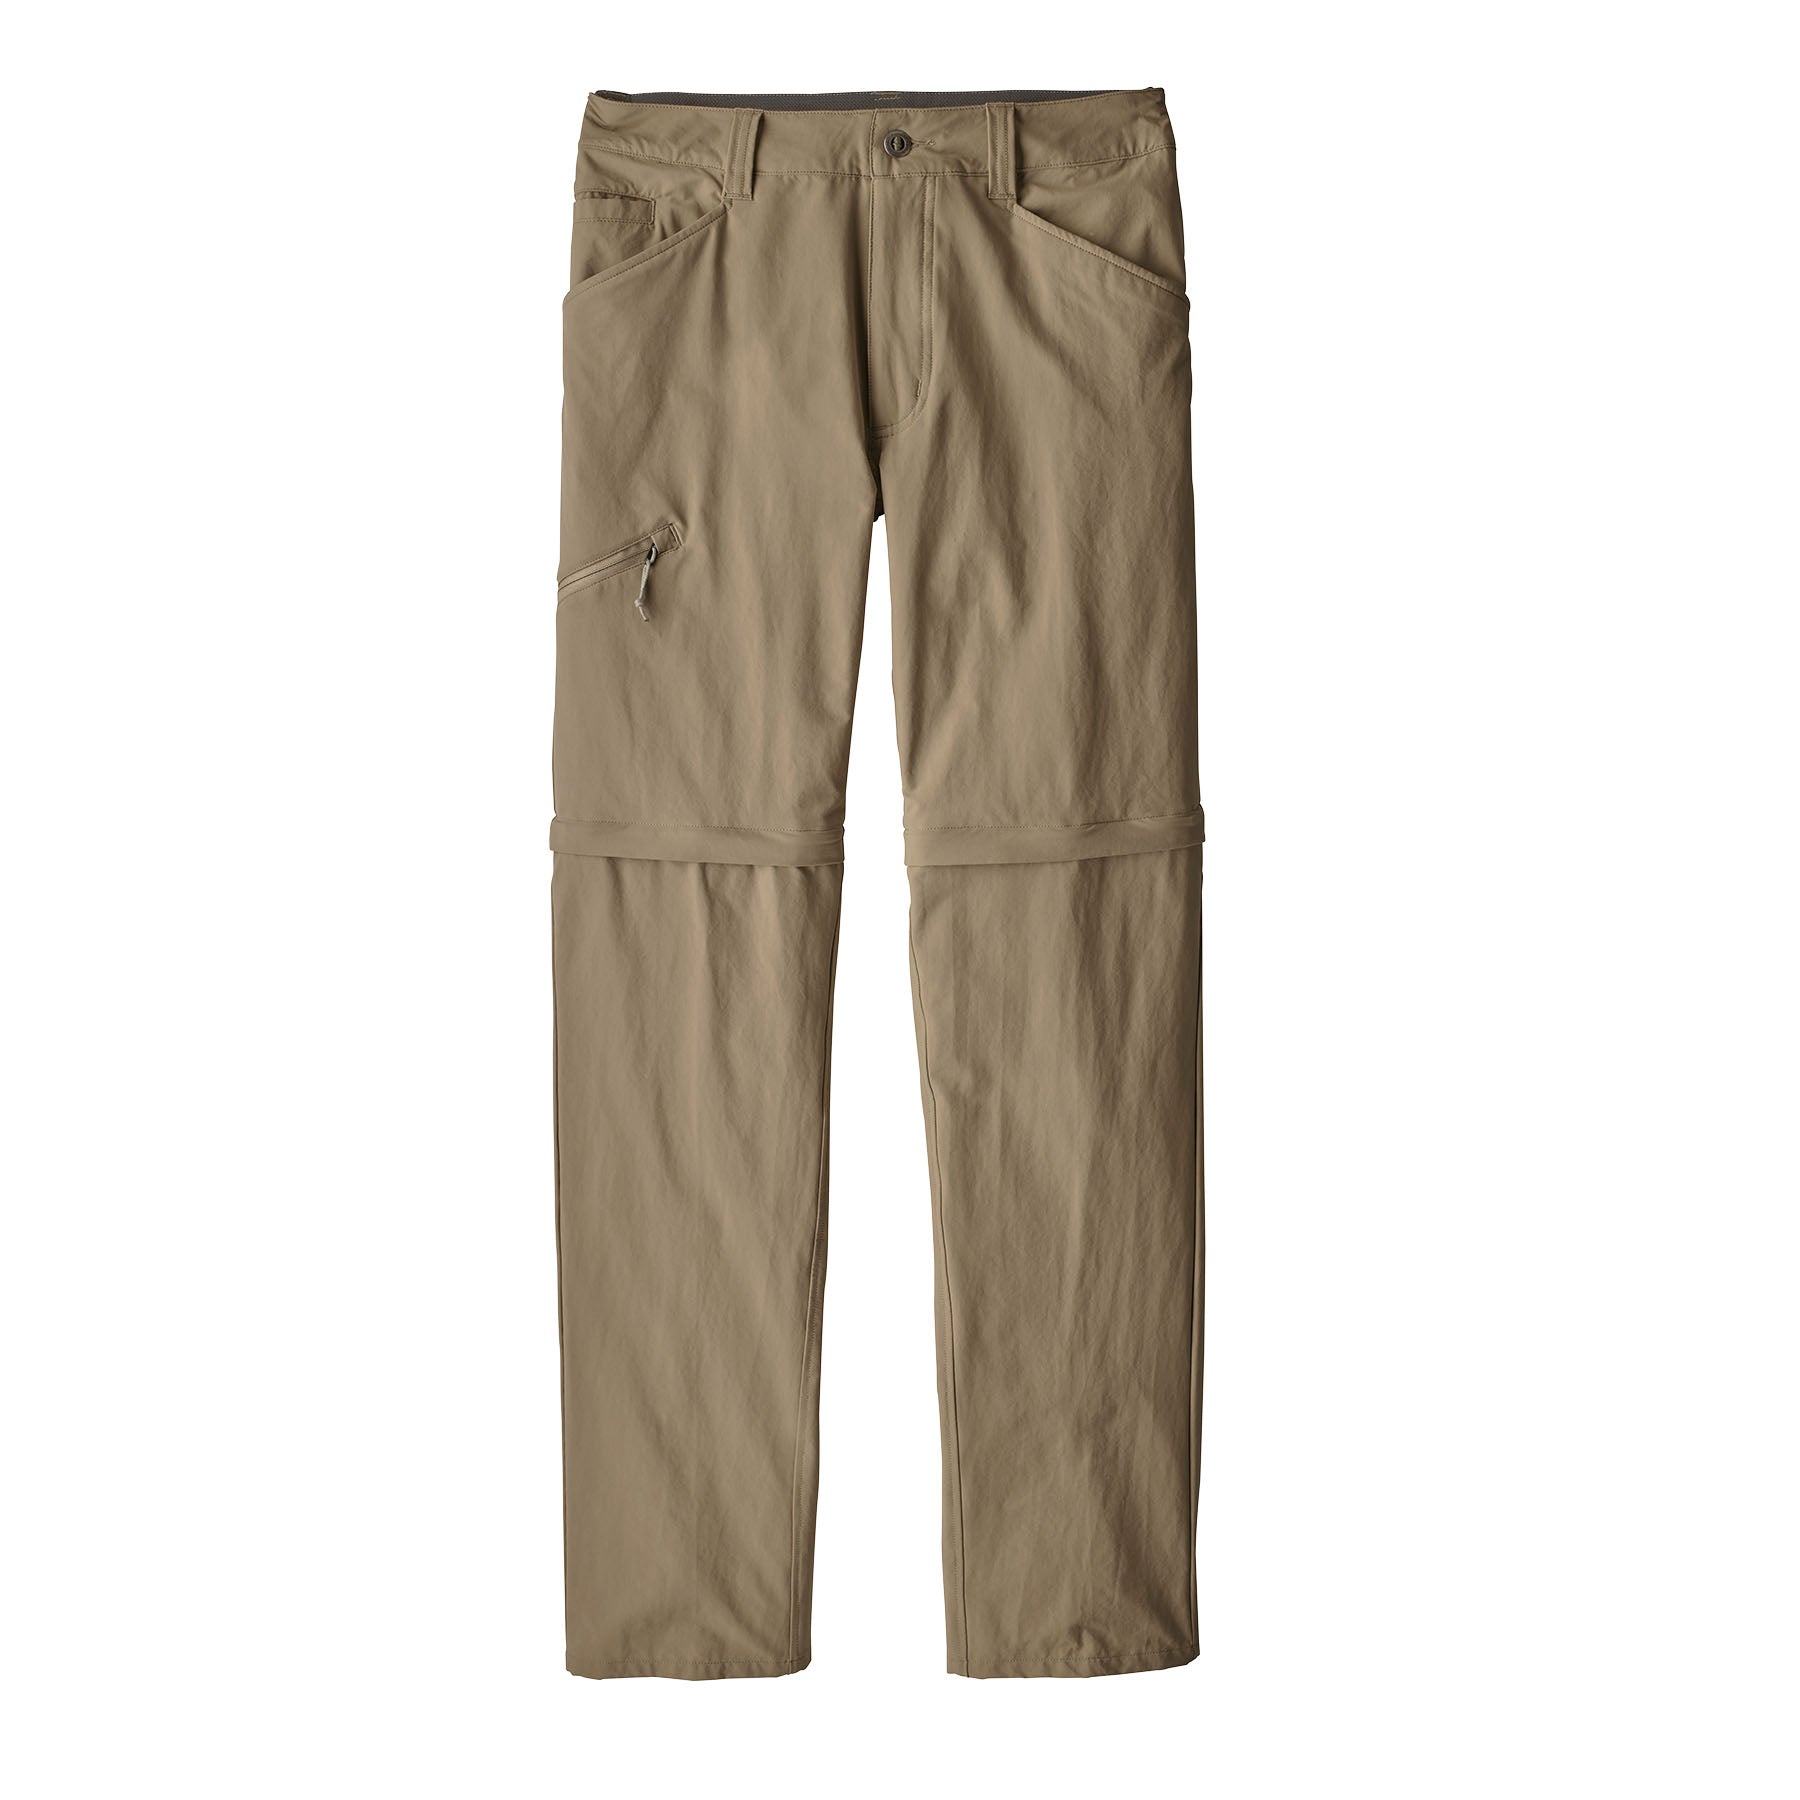 Patagonia Men's Quandary Convertible Pants - Short 33